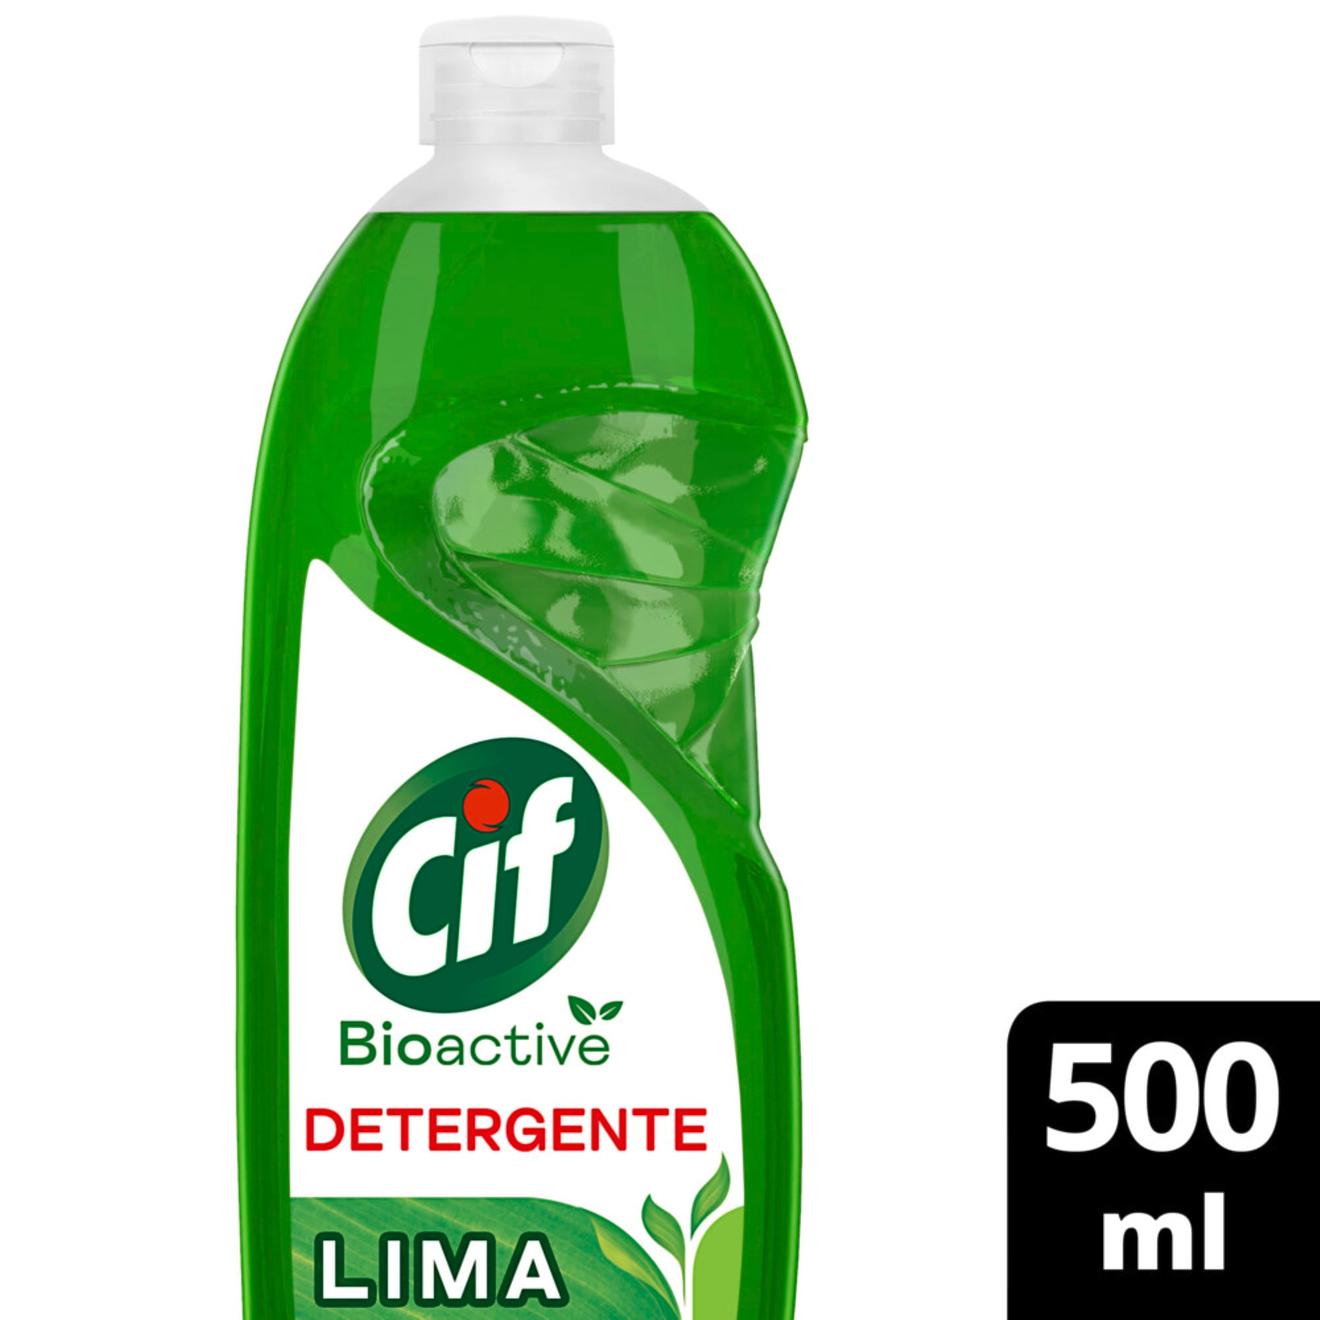 Oferta de Detergente Cif bioactive lima 500 cc. por $1735 en Carrefour